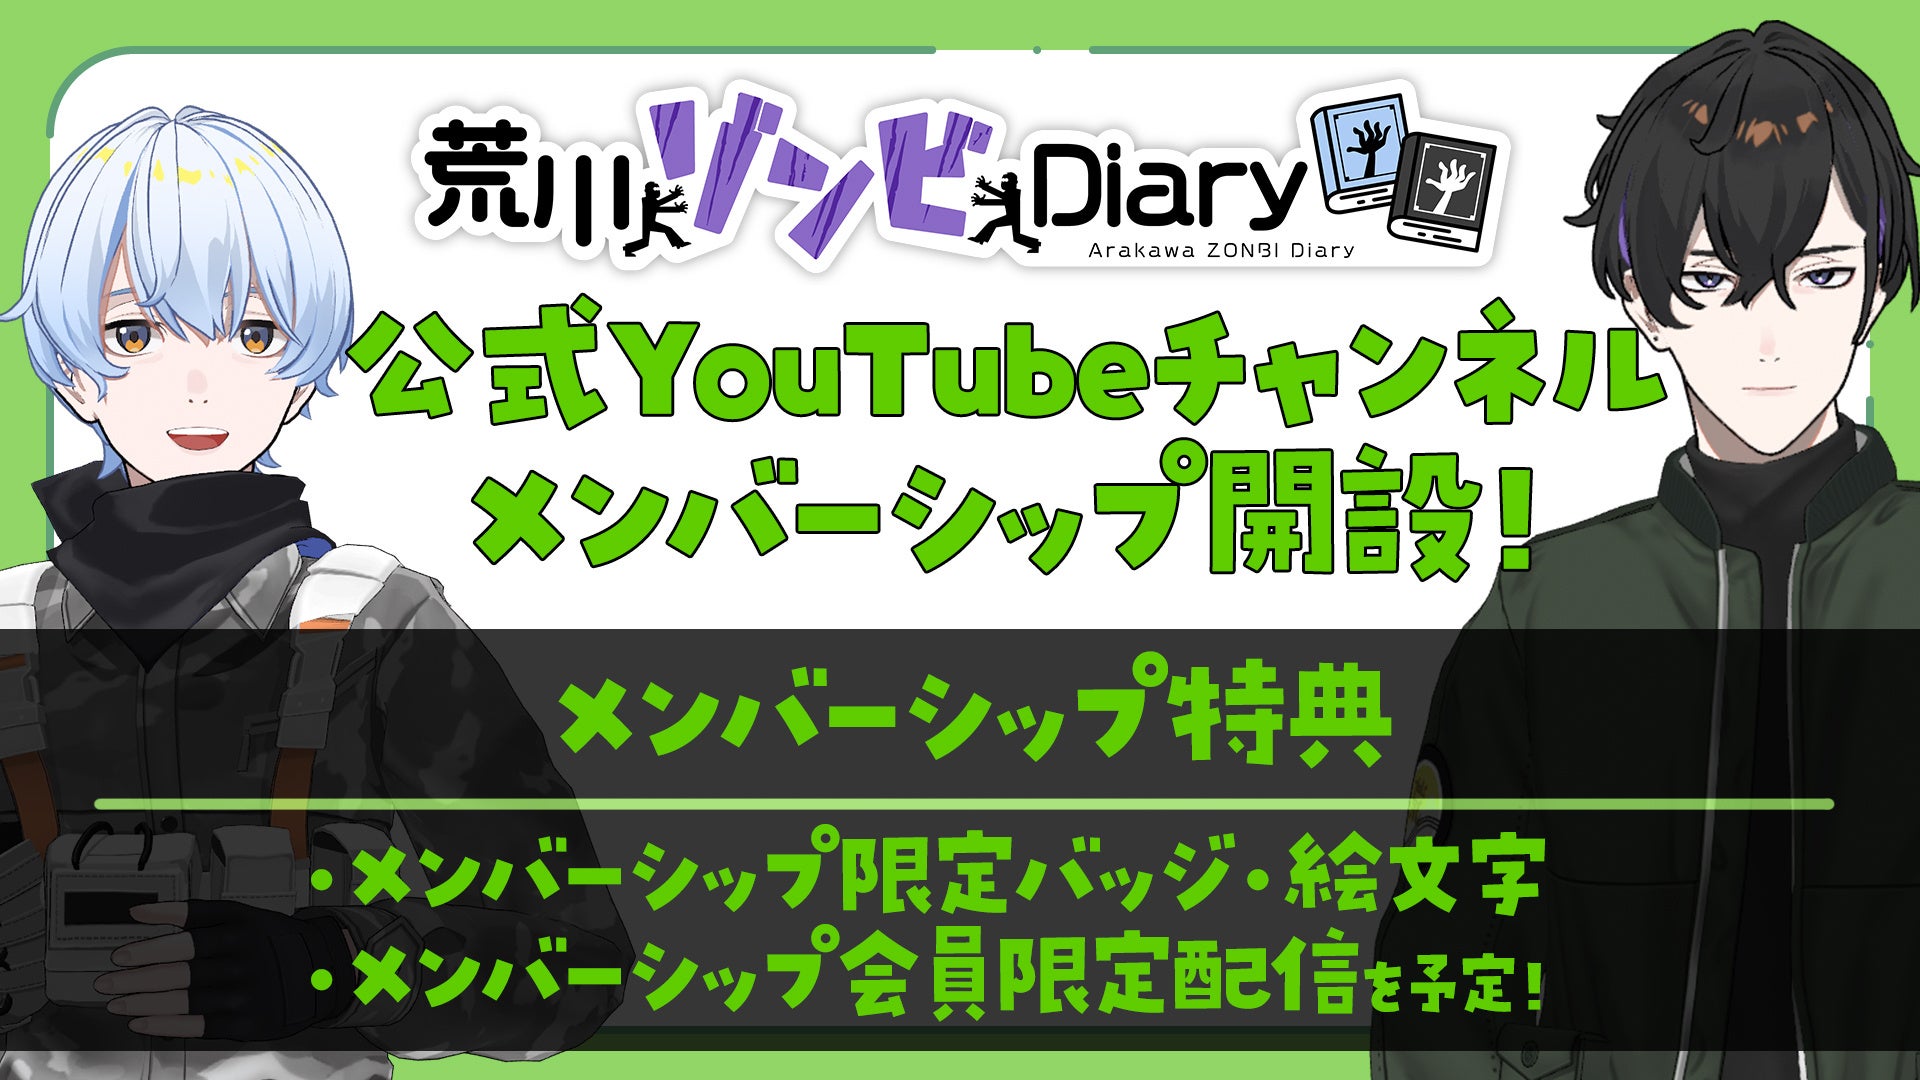 「荒川ゾンビDiary」YouTube登録者数5万人突破を記念し、メンバーシップを開始！